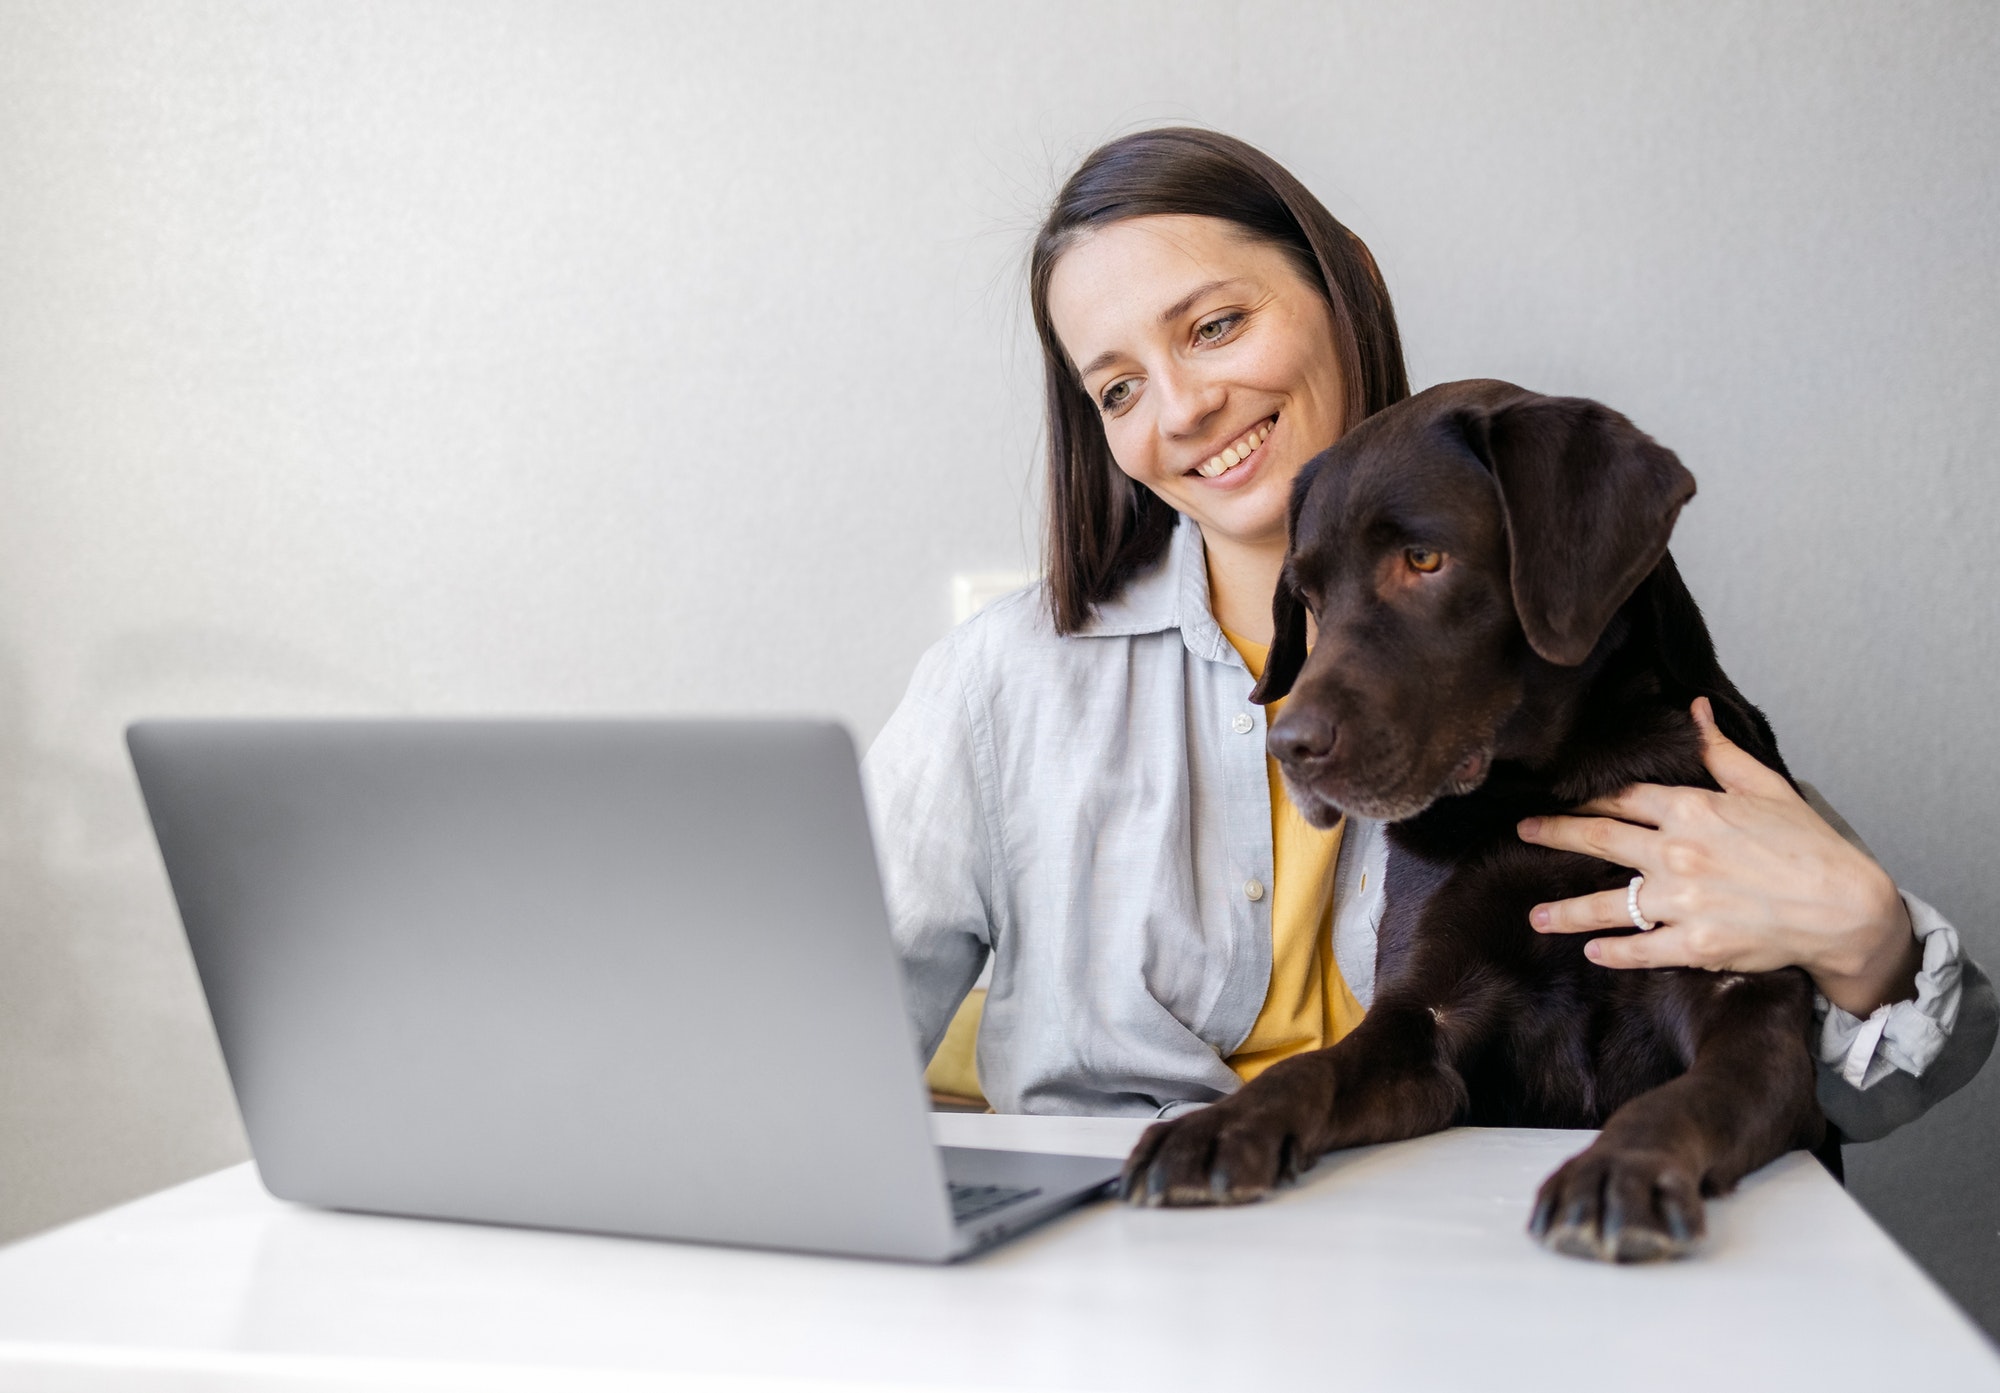 Online hundetræning - 100% skræddersyet til dig og din hund